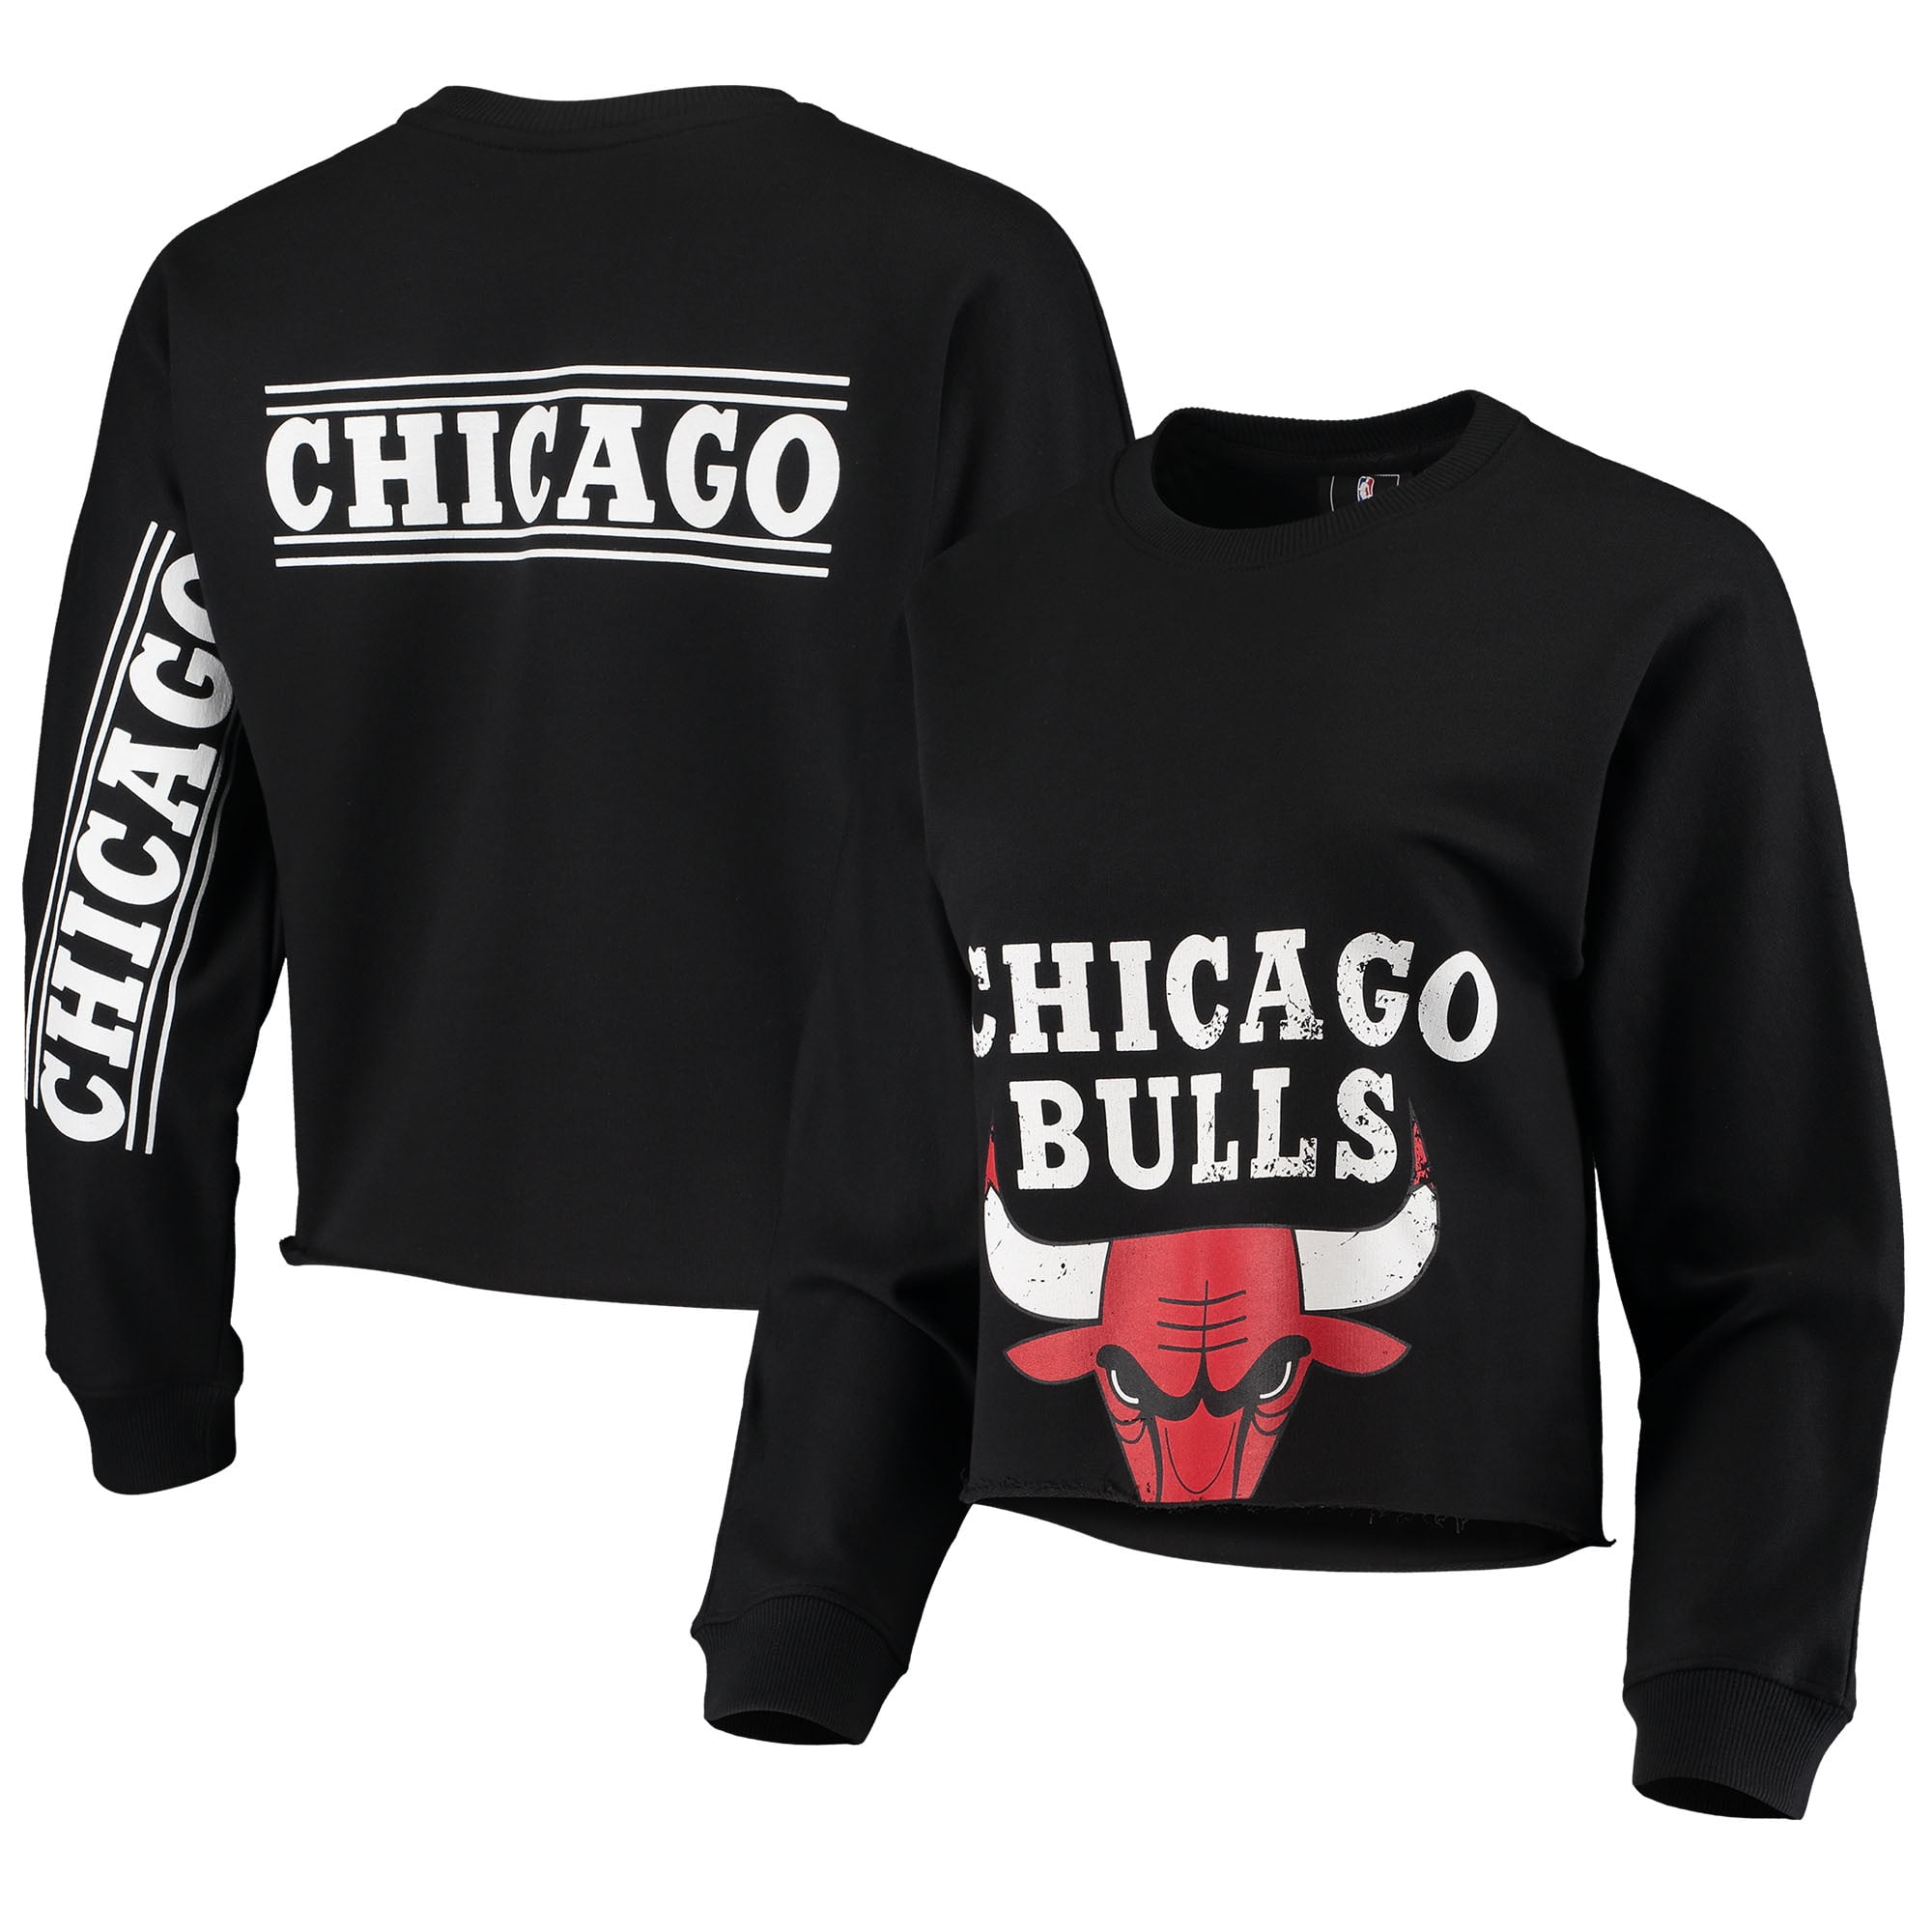 chicago bulls womens shirt